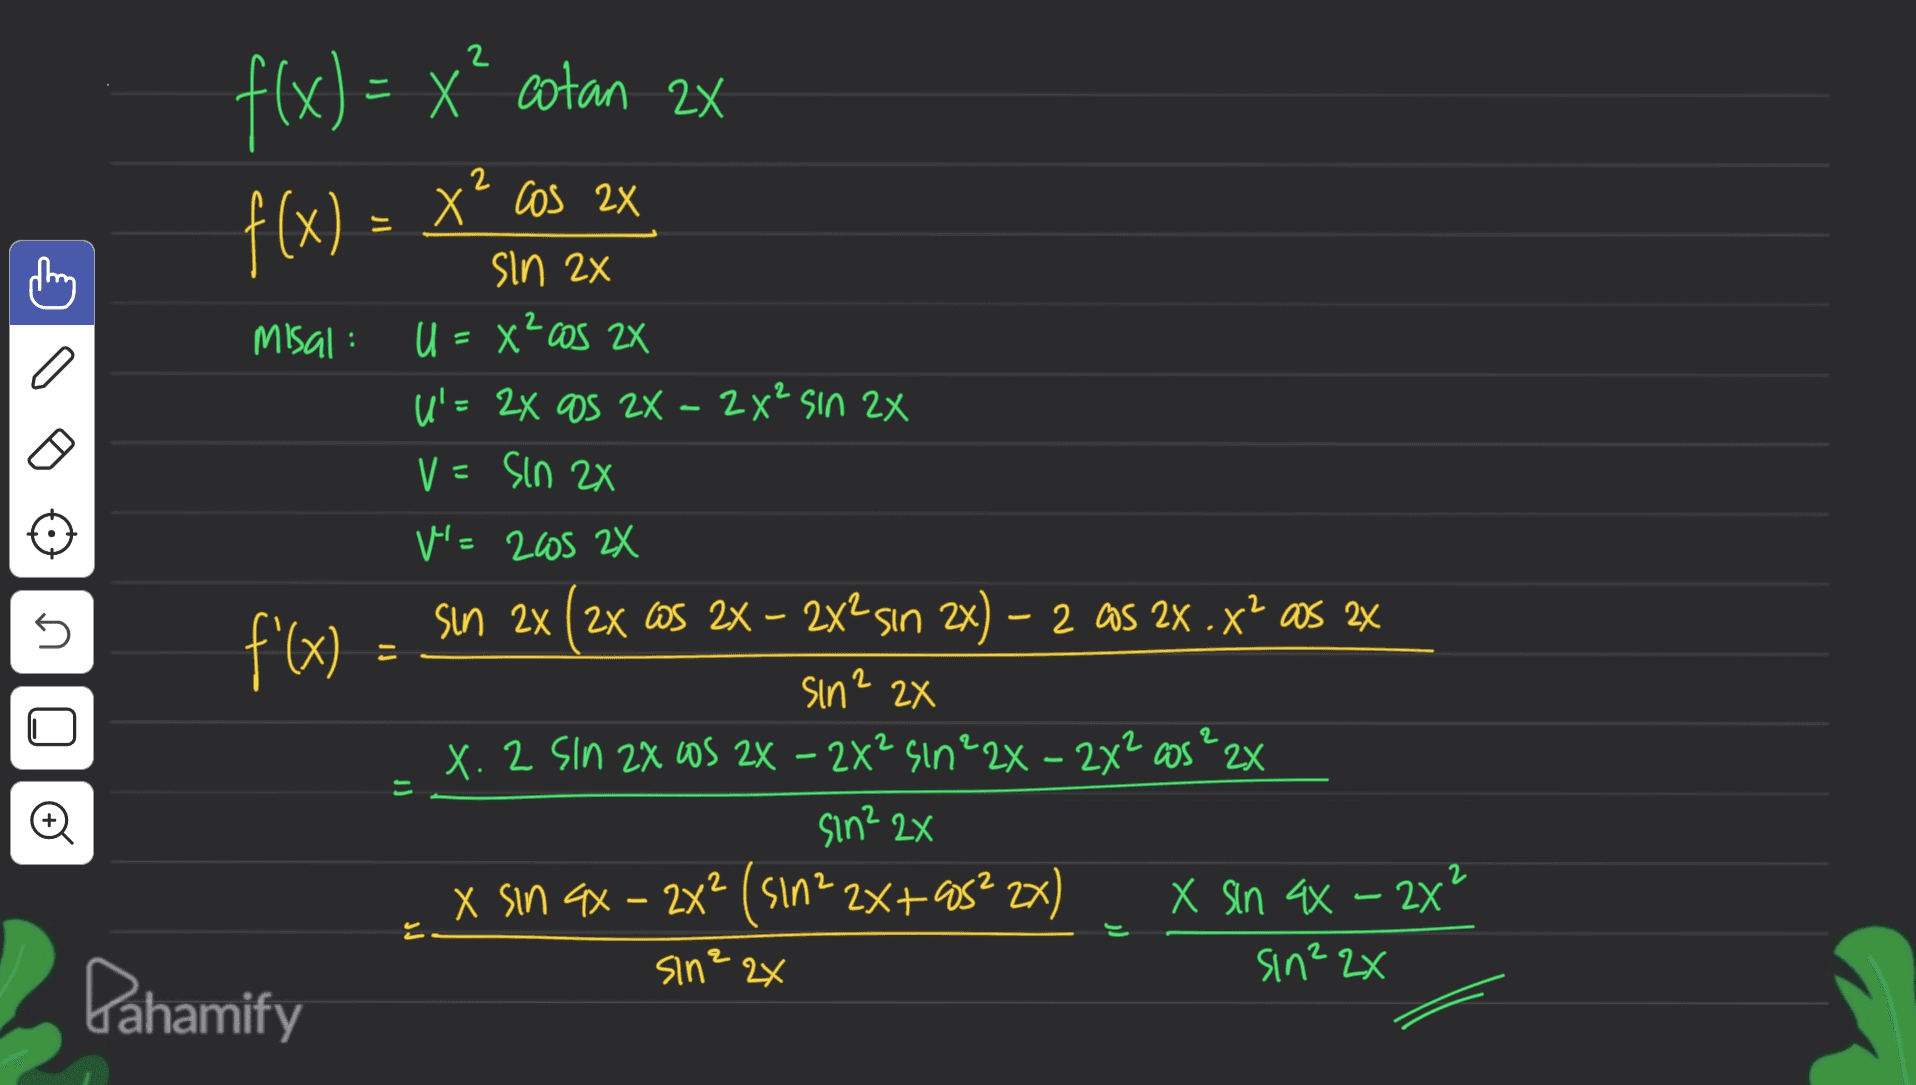 2 = 2x f(x) = x” cotan 2x f(x) = X² cos 2x 2 5 sin 2x Misal: U = x?cos 2x U'= 24 as 2X - 2x² sin 2x V=Sin 2X V=205 2X f'(x) = sin 2x (2x GS 2X – 2x2sın 2x) – 2 as 2x .X? as 2x sin? 2x X. 2 Sin 2X OS 2X - 2X² sin²2X - 2x2 as ? 2x sin? 2x X sin ax - 2x² (sin² 2x+85² 2x) X sin 44 - 2x sin? 2x sin? 2x 2 U 2 - 2 Pahamify 